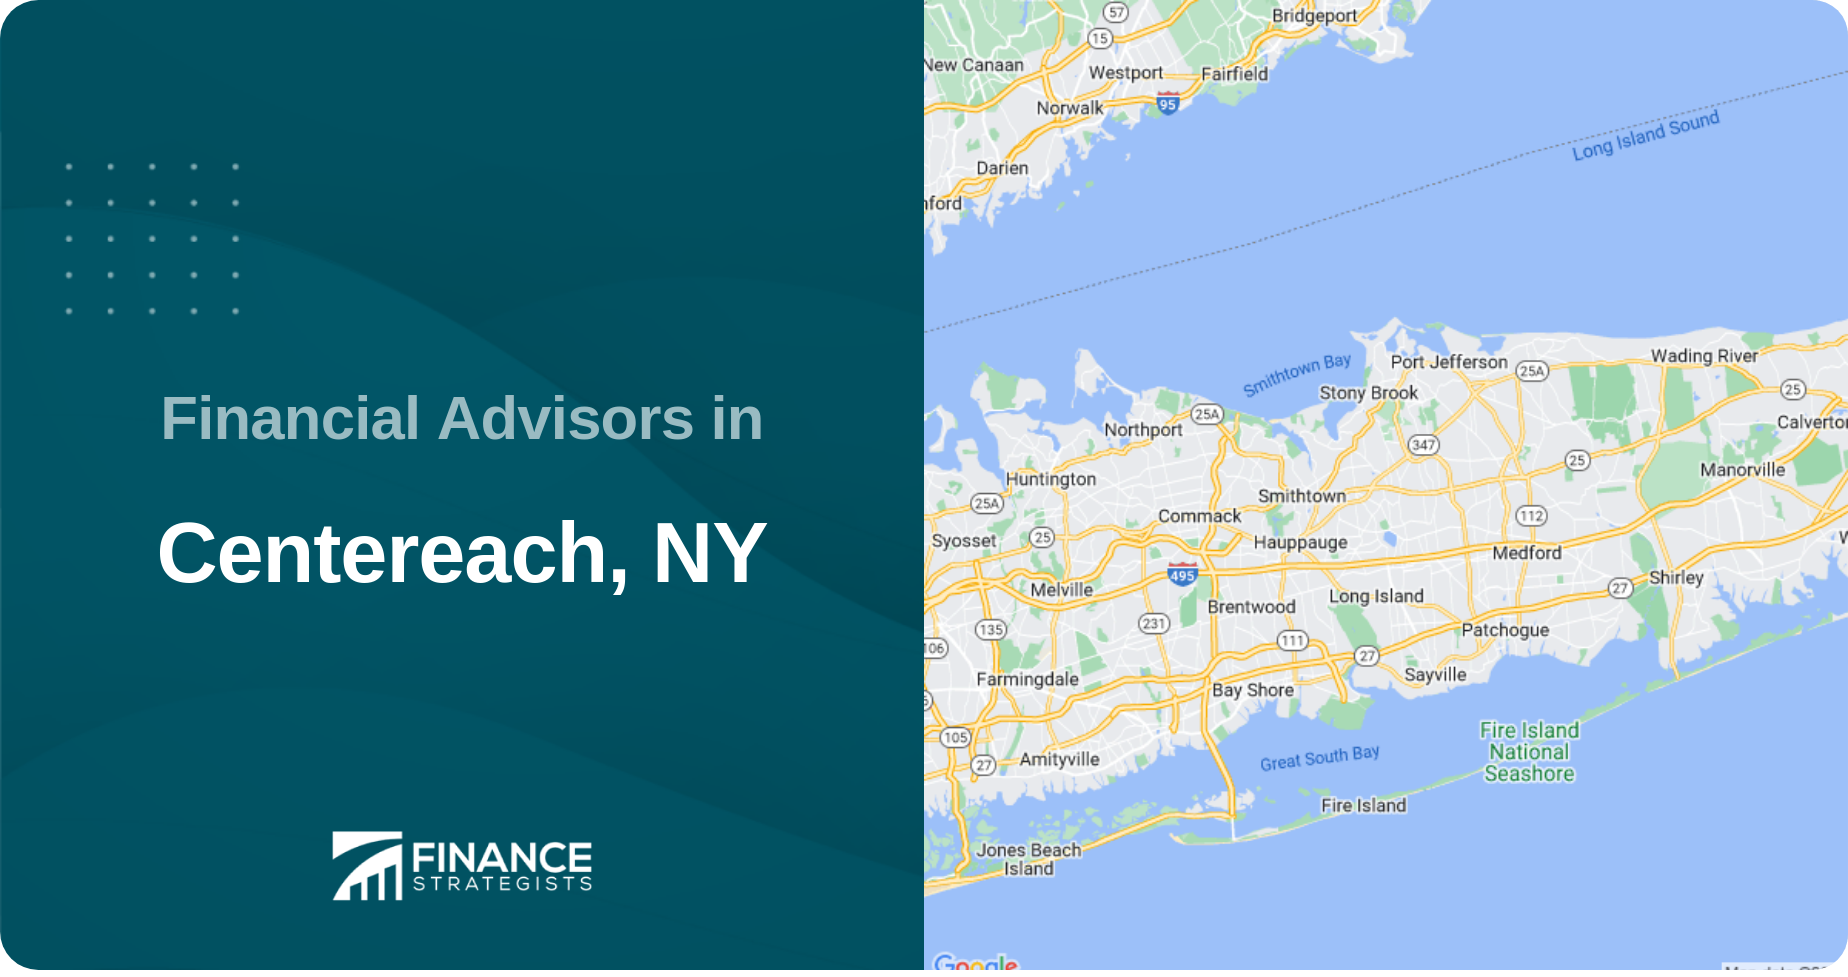 Financial Advisors in Centereach, NY